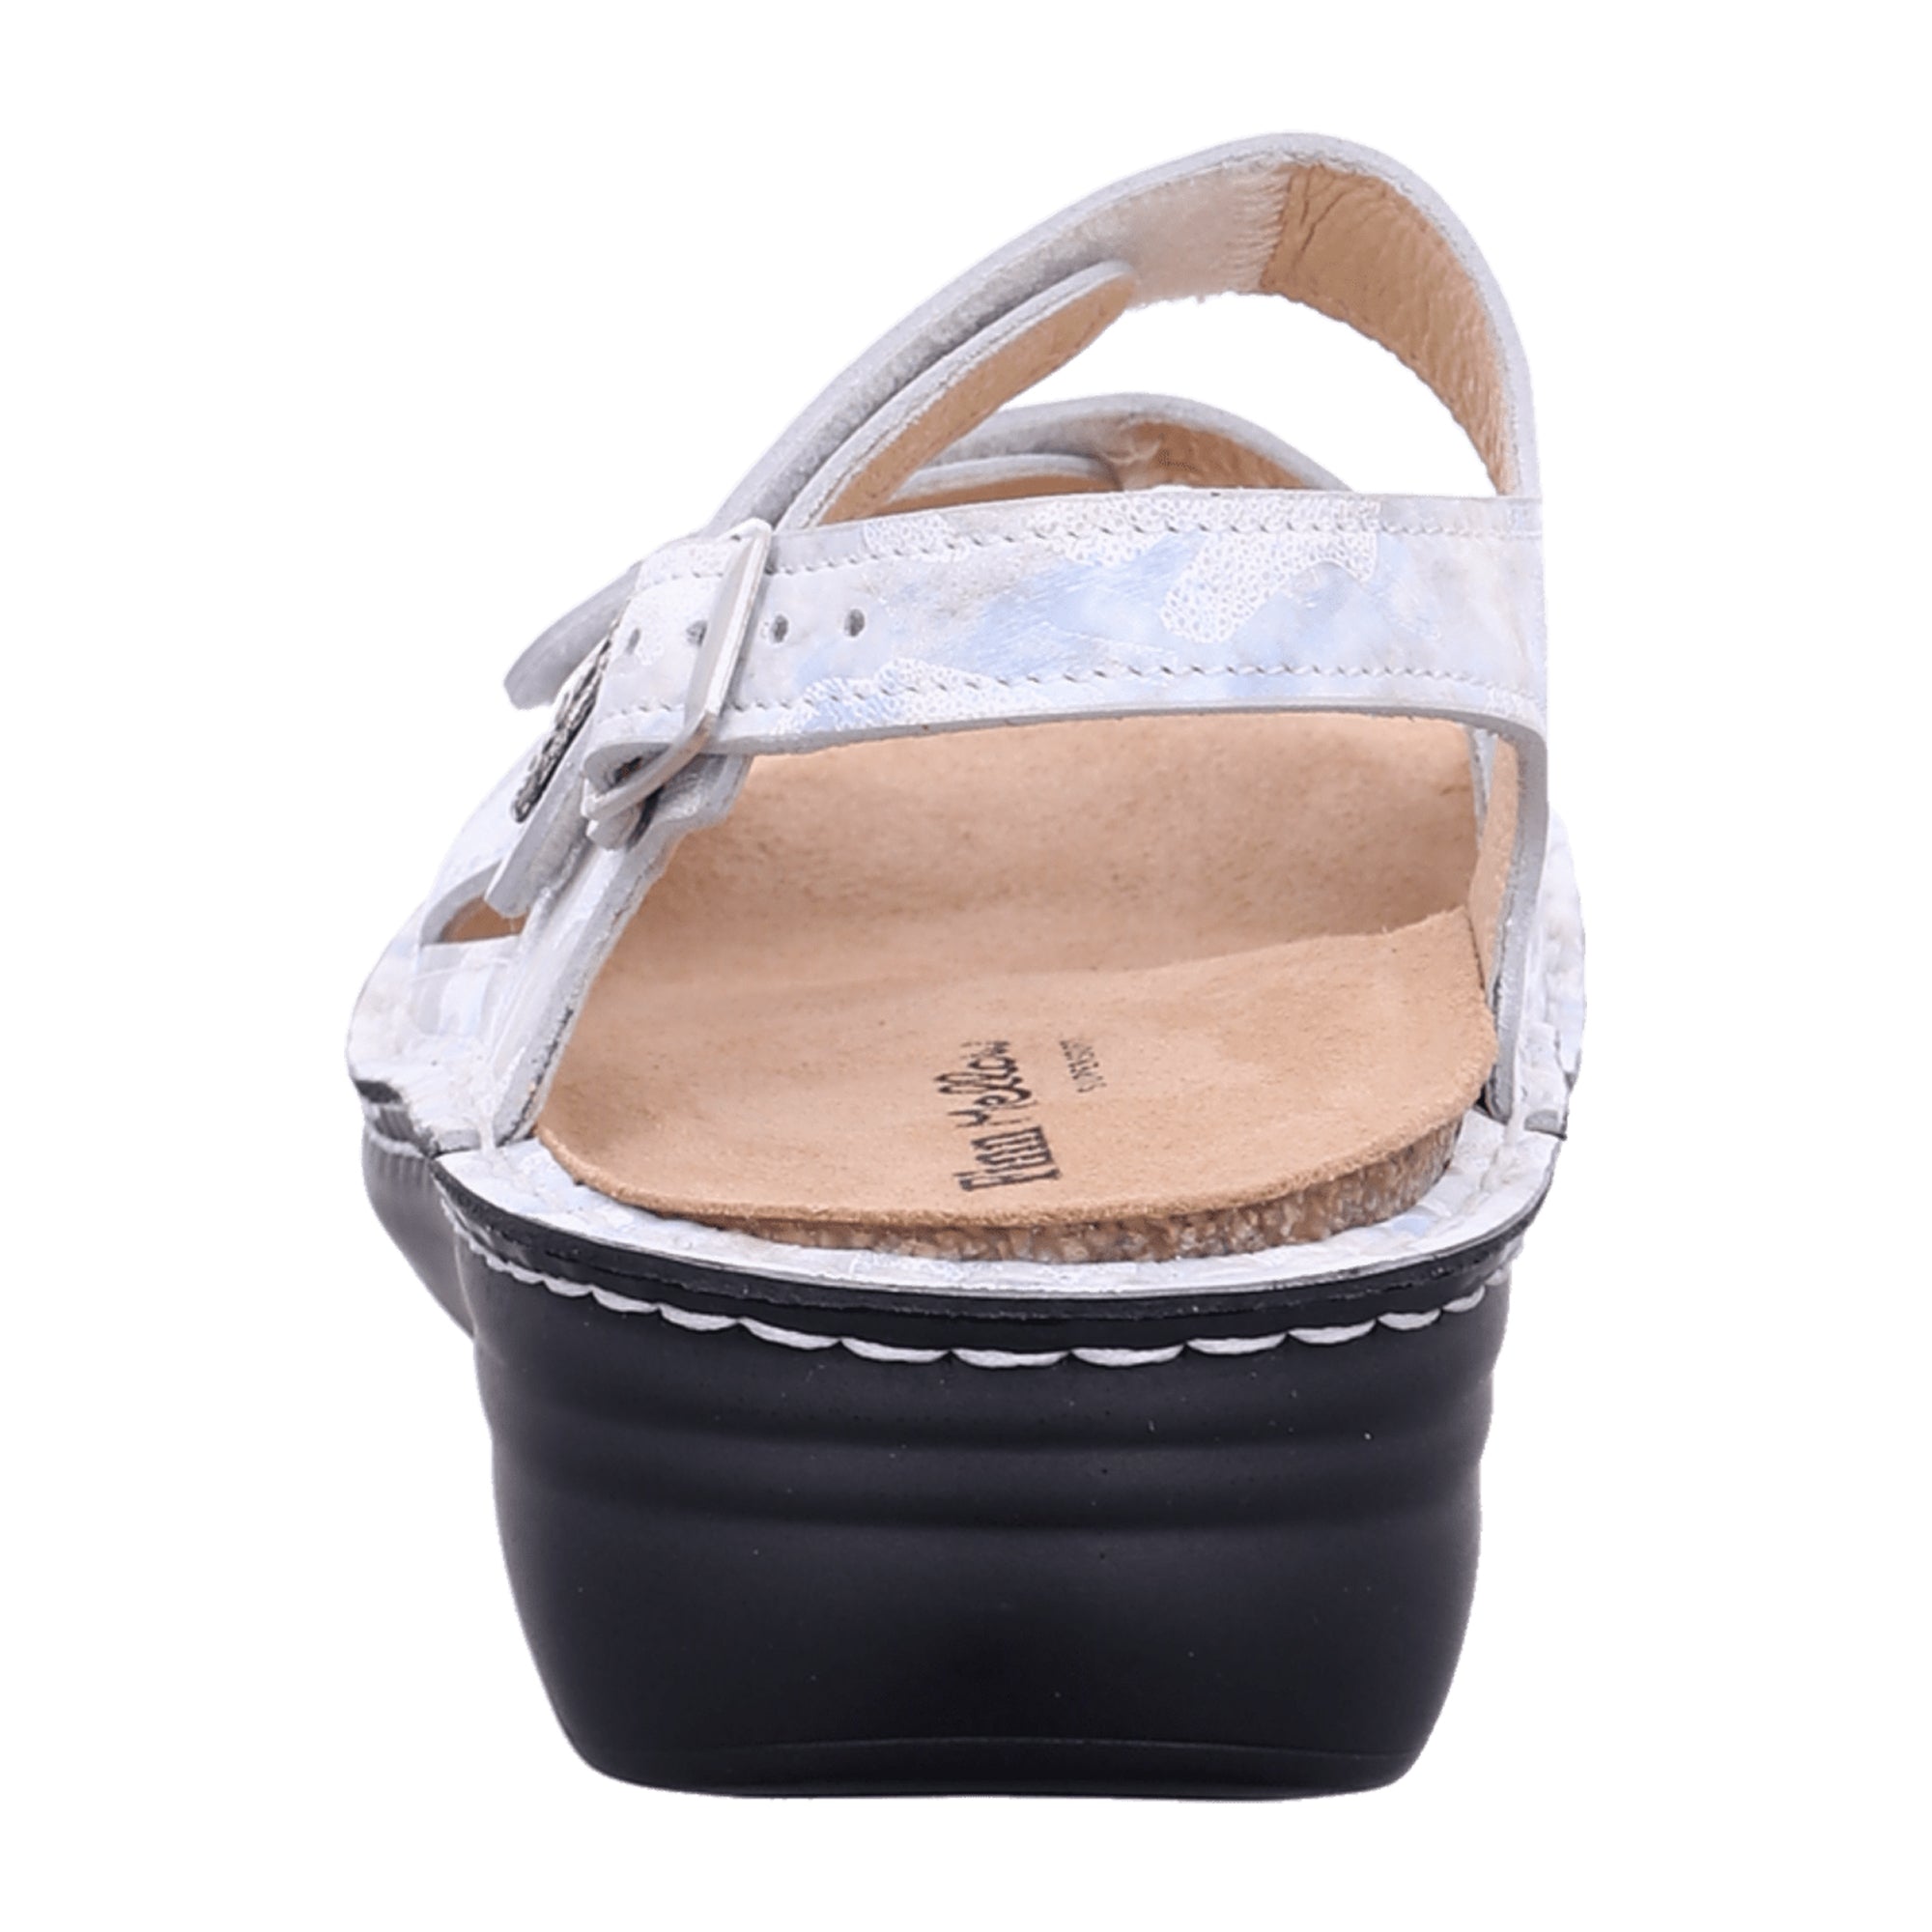 Finn Comfort Barbuda Women's Comfortable Sandals - Elegant White